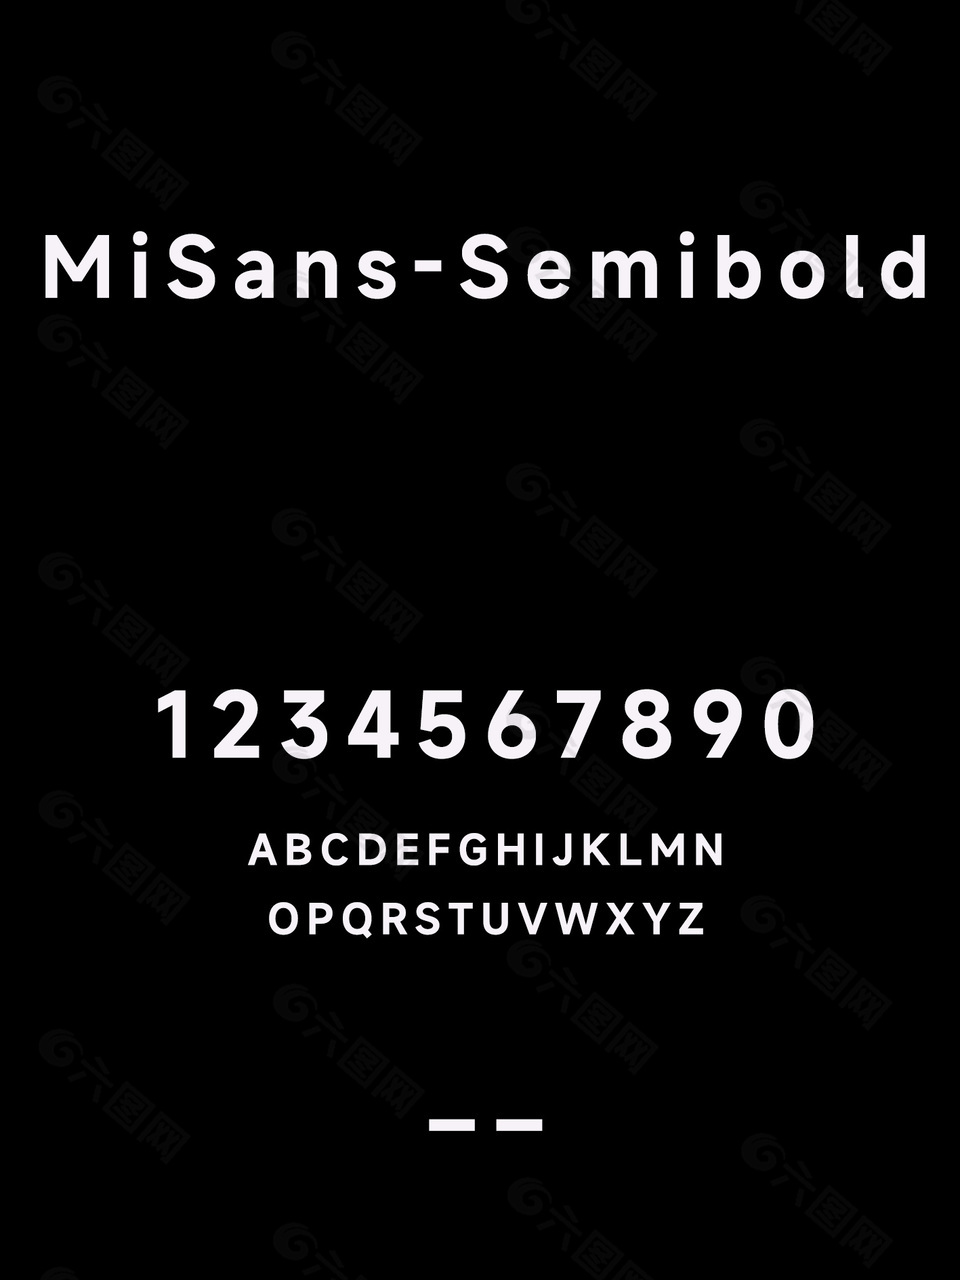 MiSans-Semibold字体包下载